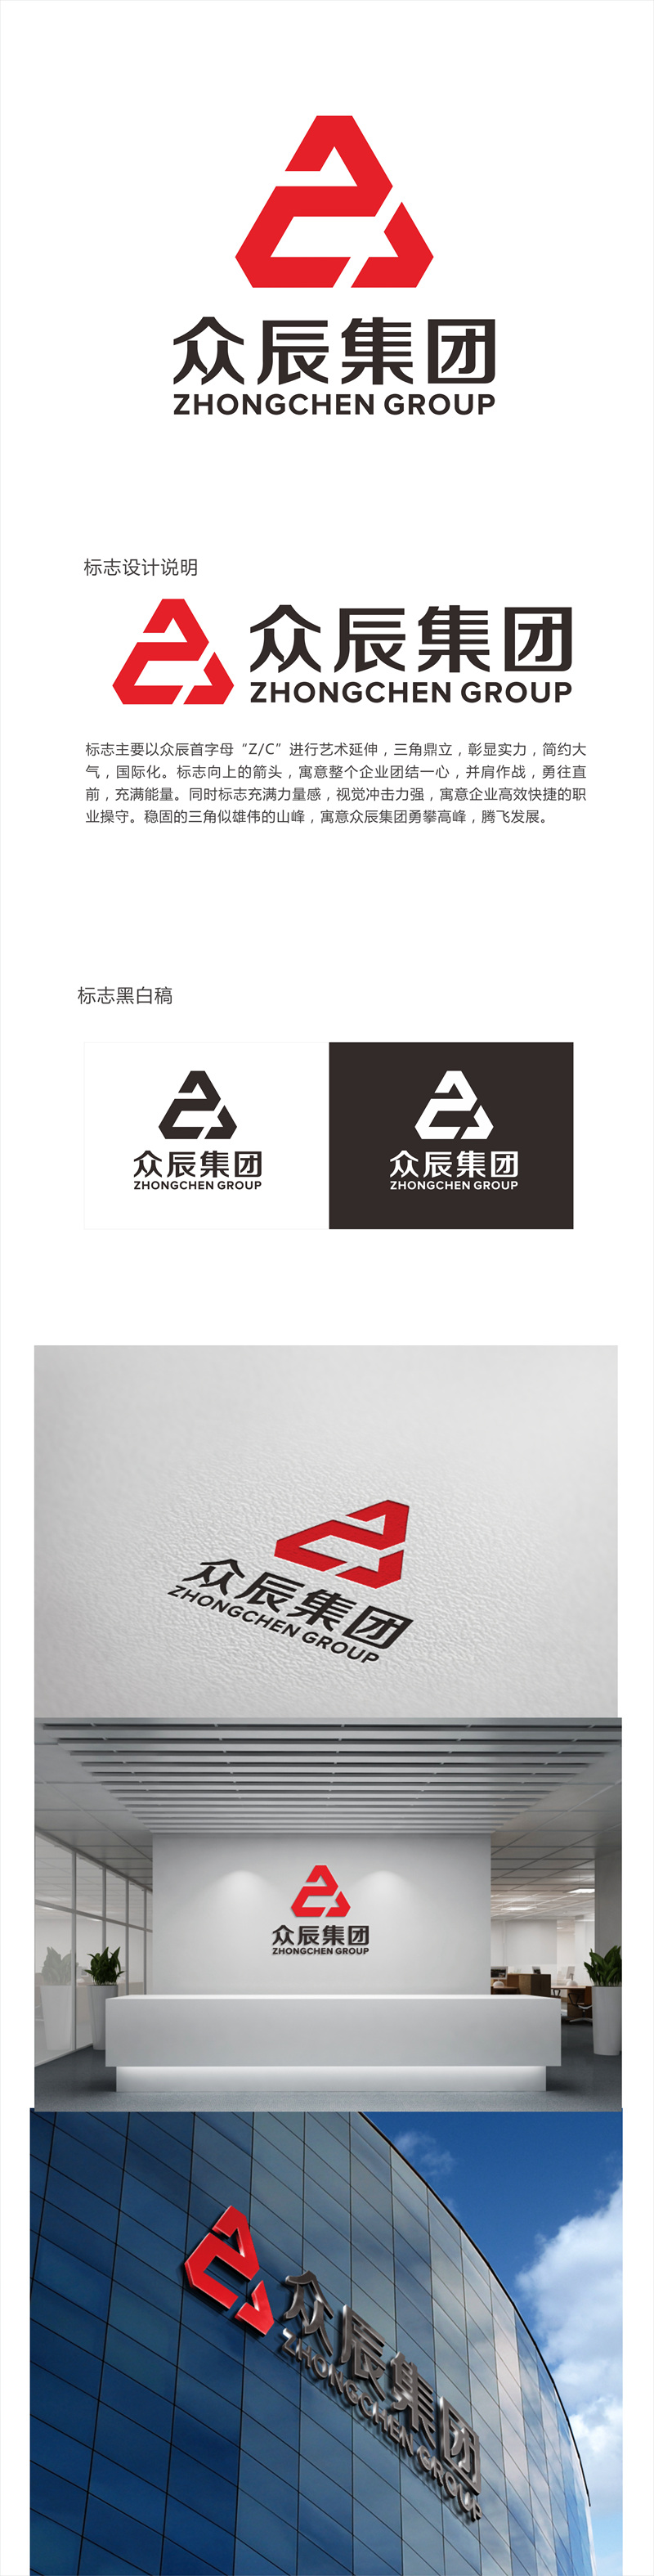 唐国强的众辰集团logo设计